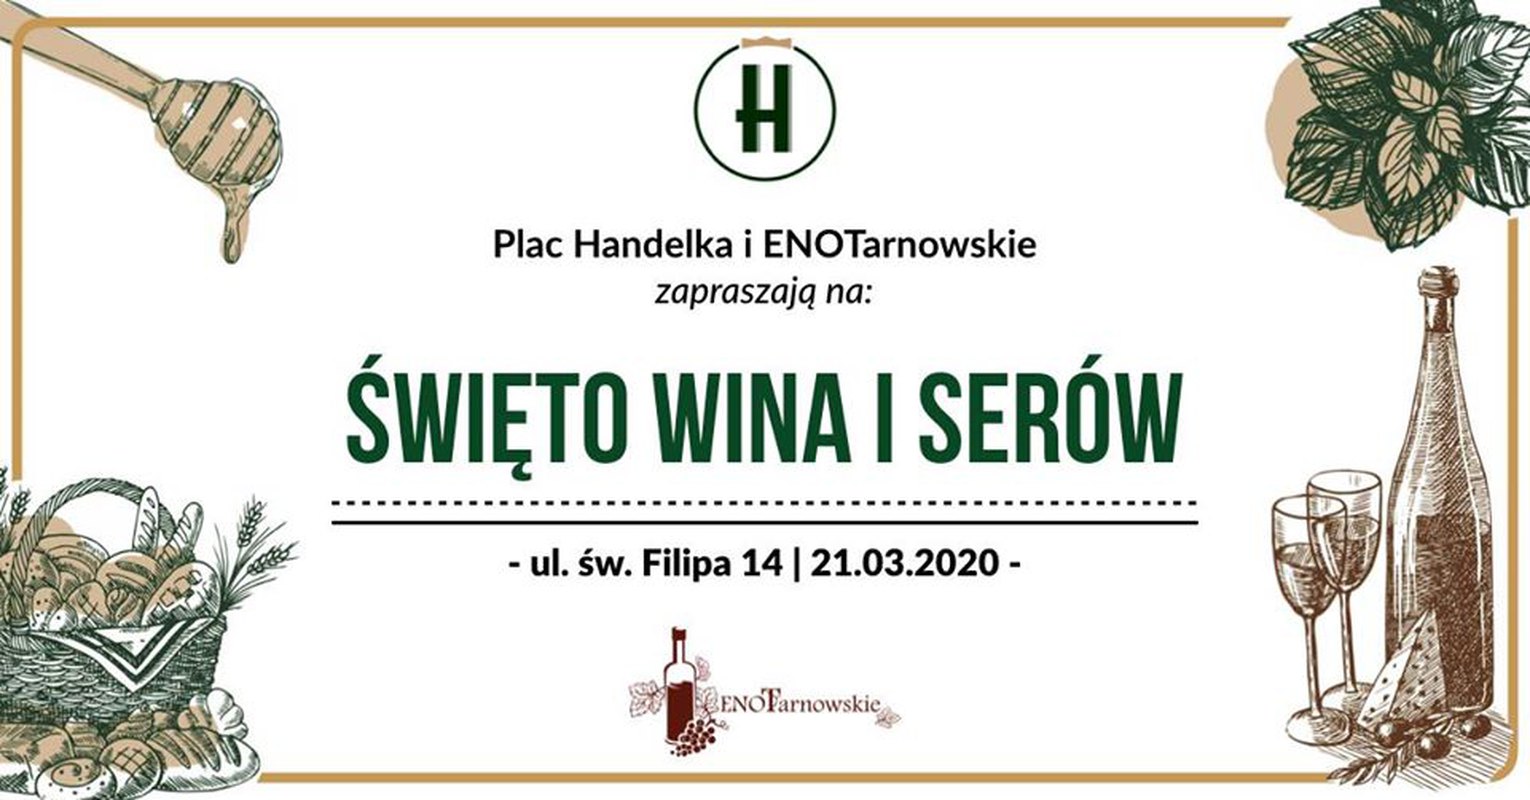 Plac Handelka: Święto Wina i Serów 21.03.2020